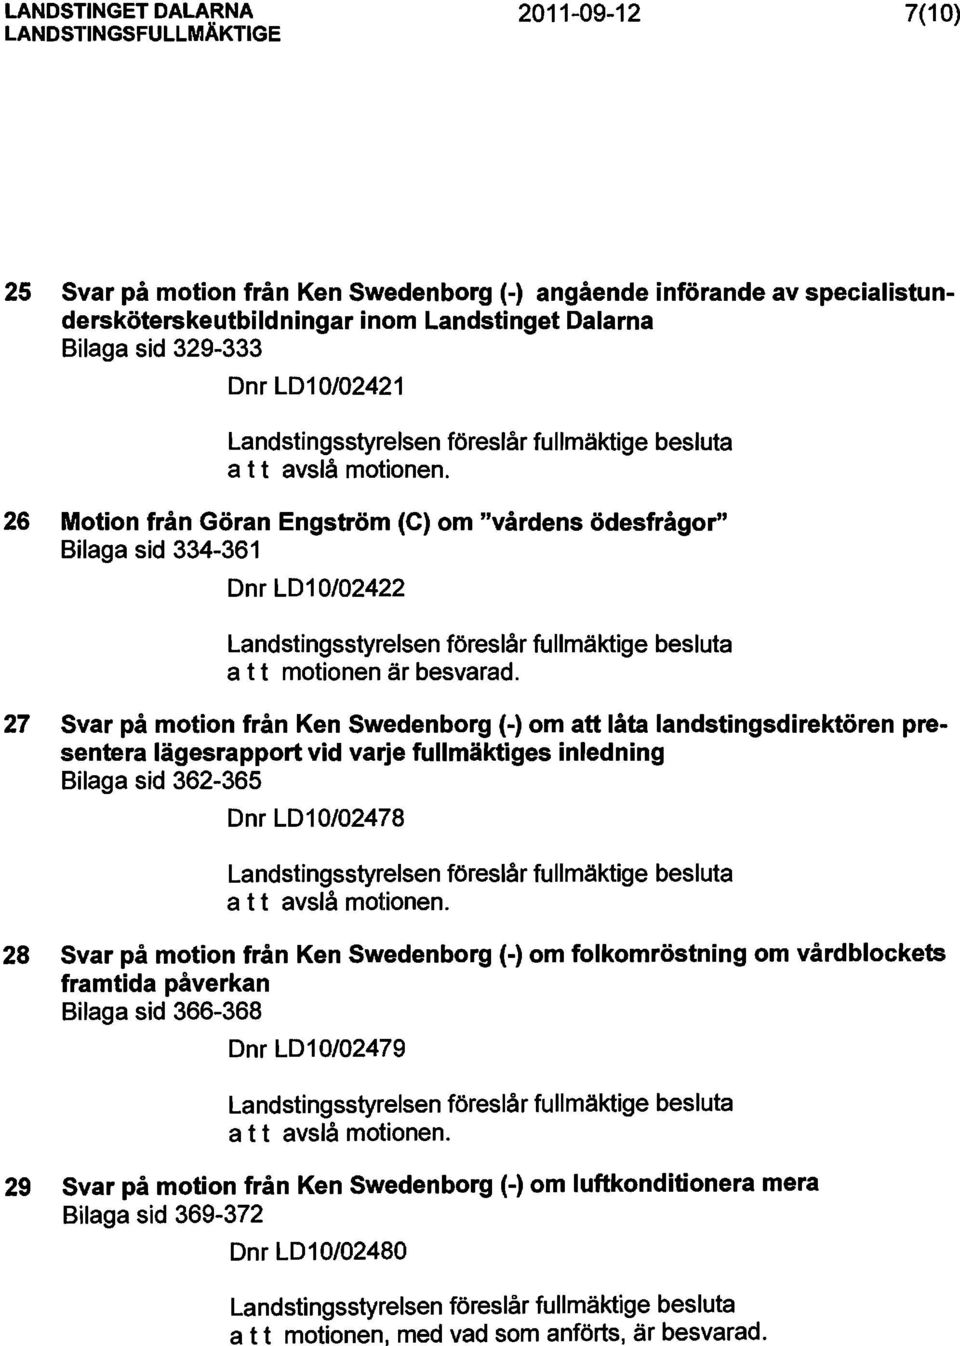 27 Svar på motion från Ken Swedenborg (-) om att låta landstingsdirektören presentera lägesrapport vid varje fullmäktiges inledning Bilaga sid 362-365 Dnr LD10/02478 28 Svar